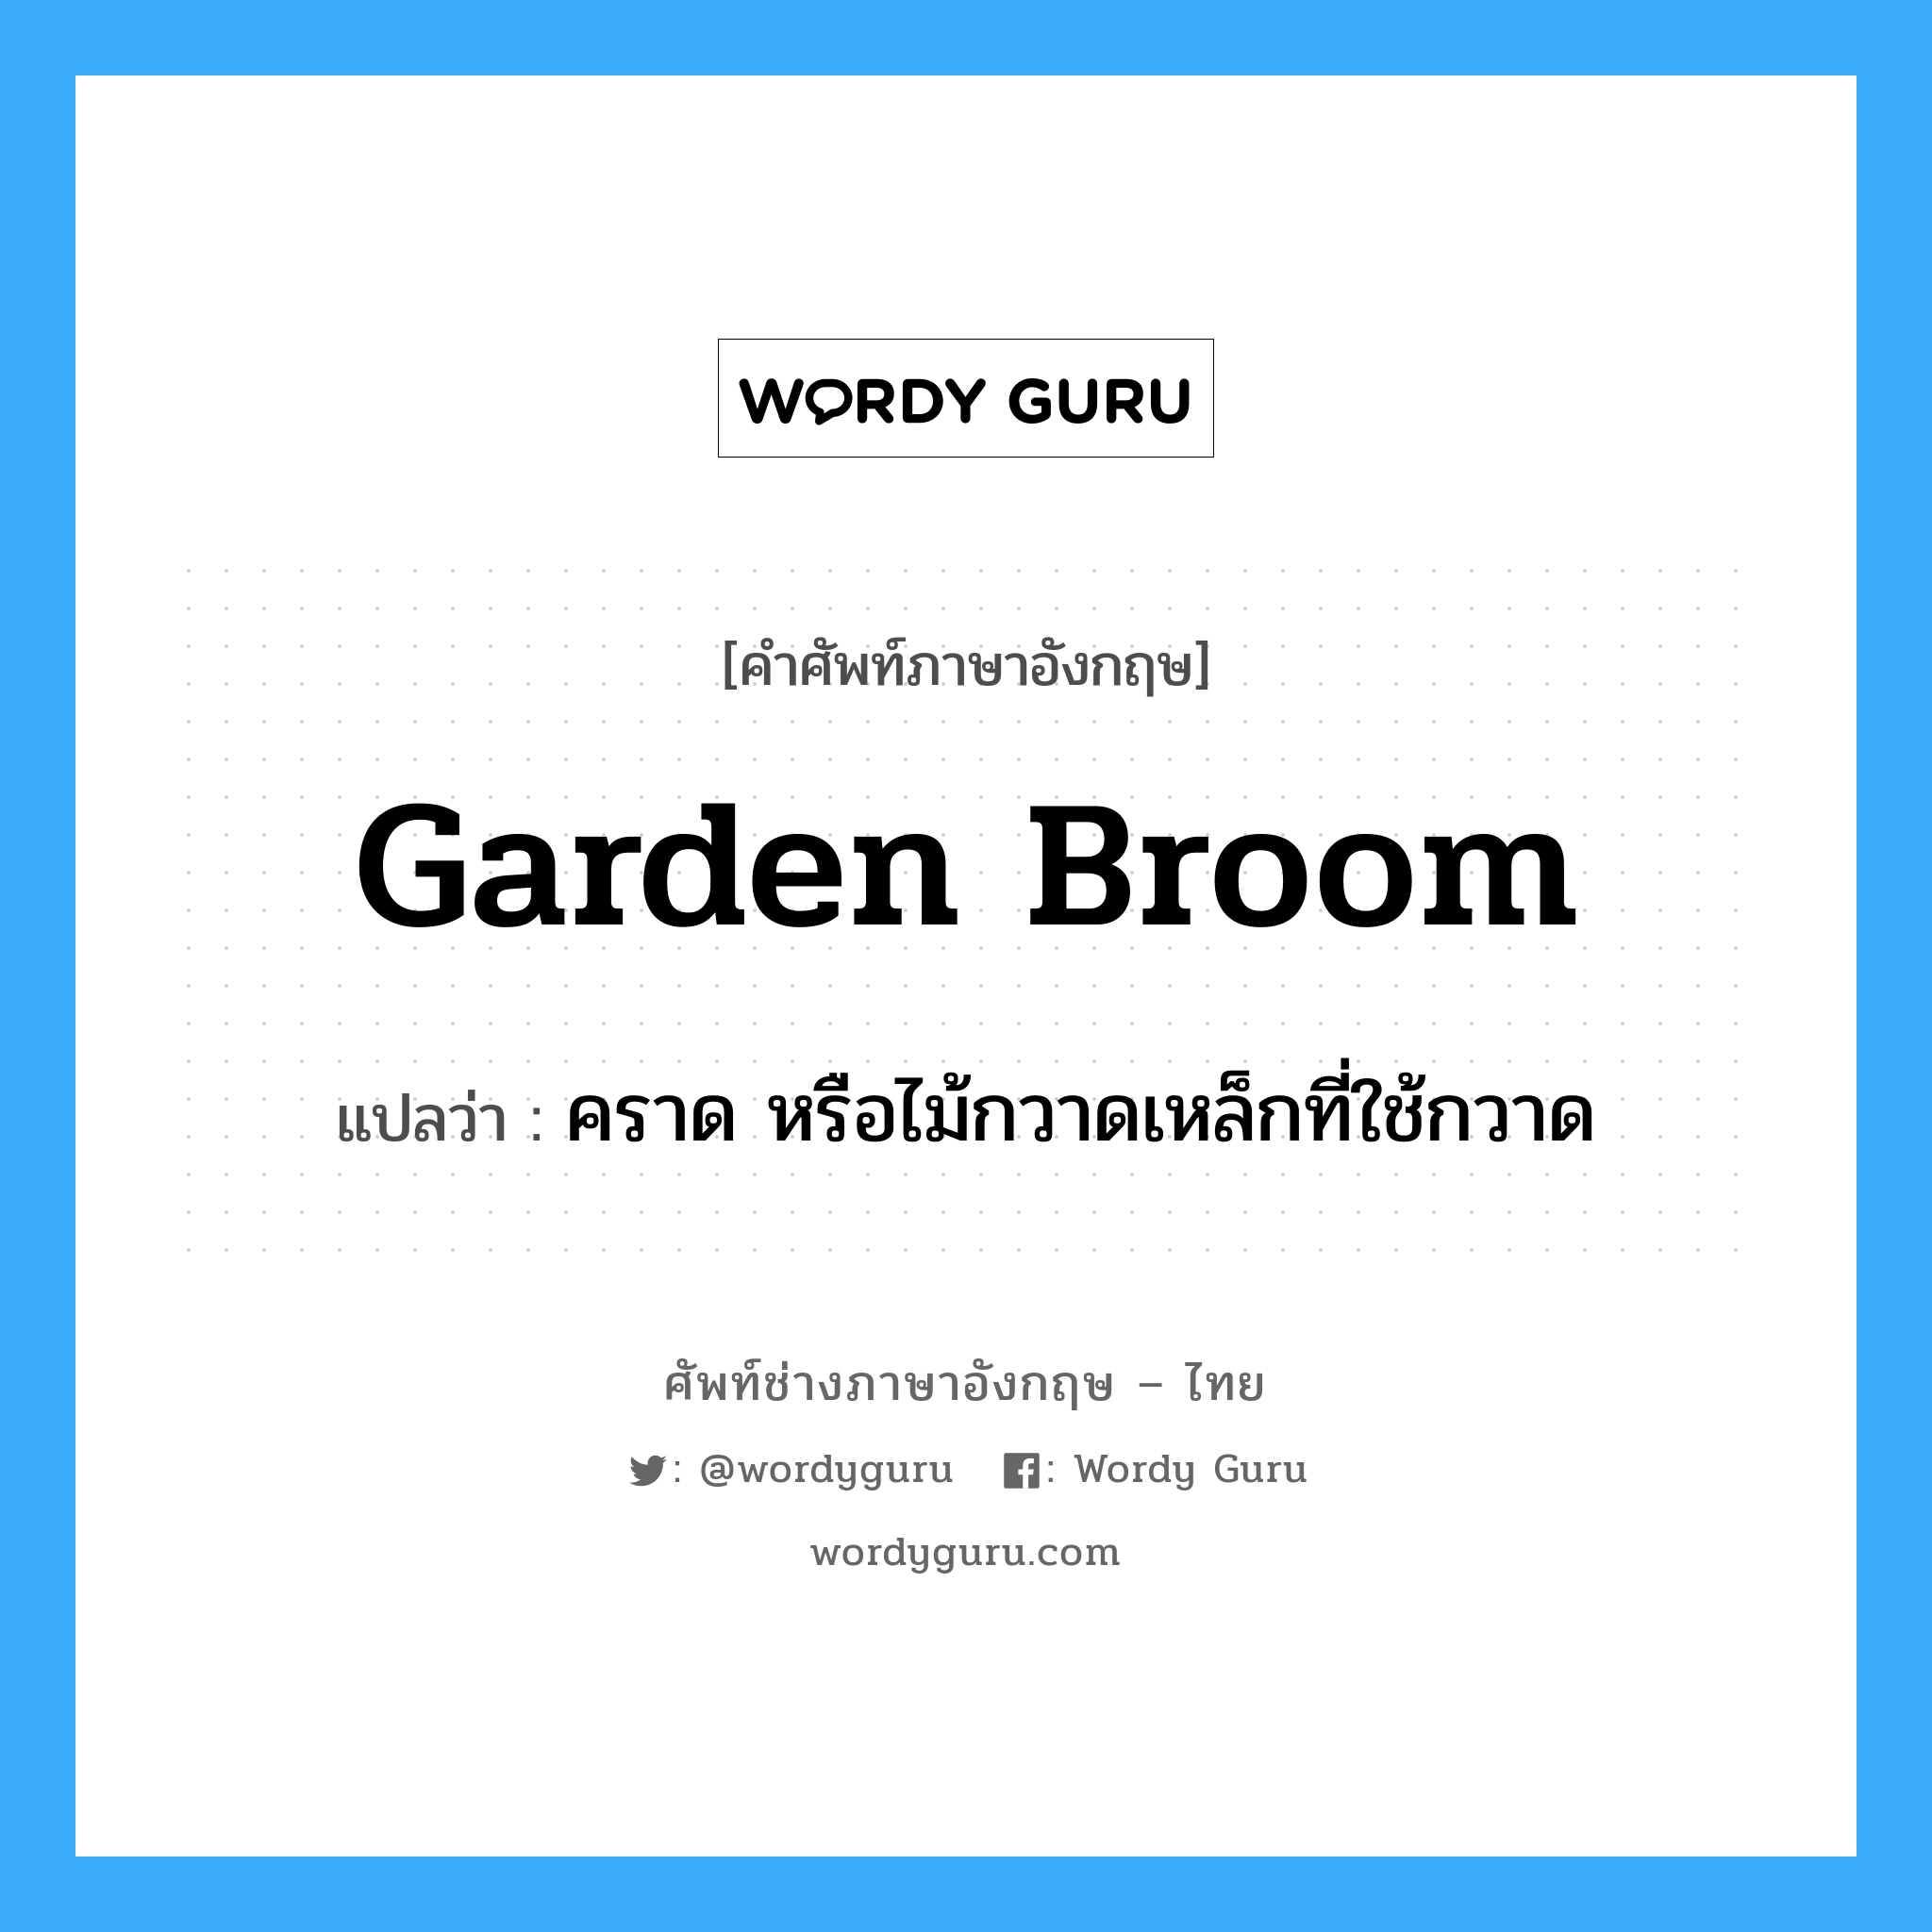 garden broom แปลว่า?, คำศัพท์ช่างภาษาอังกฤษ - ไทย garden broom คำศัพท์ภาษาอังกฤษ garden broom แปลว่า คราด หรือไม้กวาดเหล็กที่ใช้กวาด